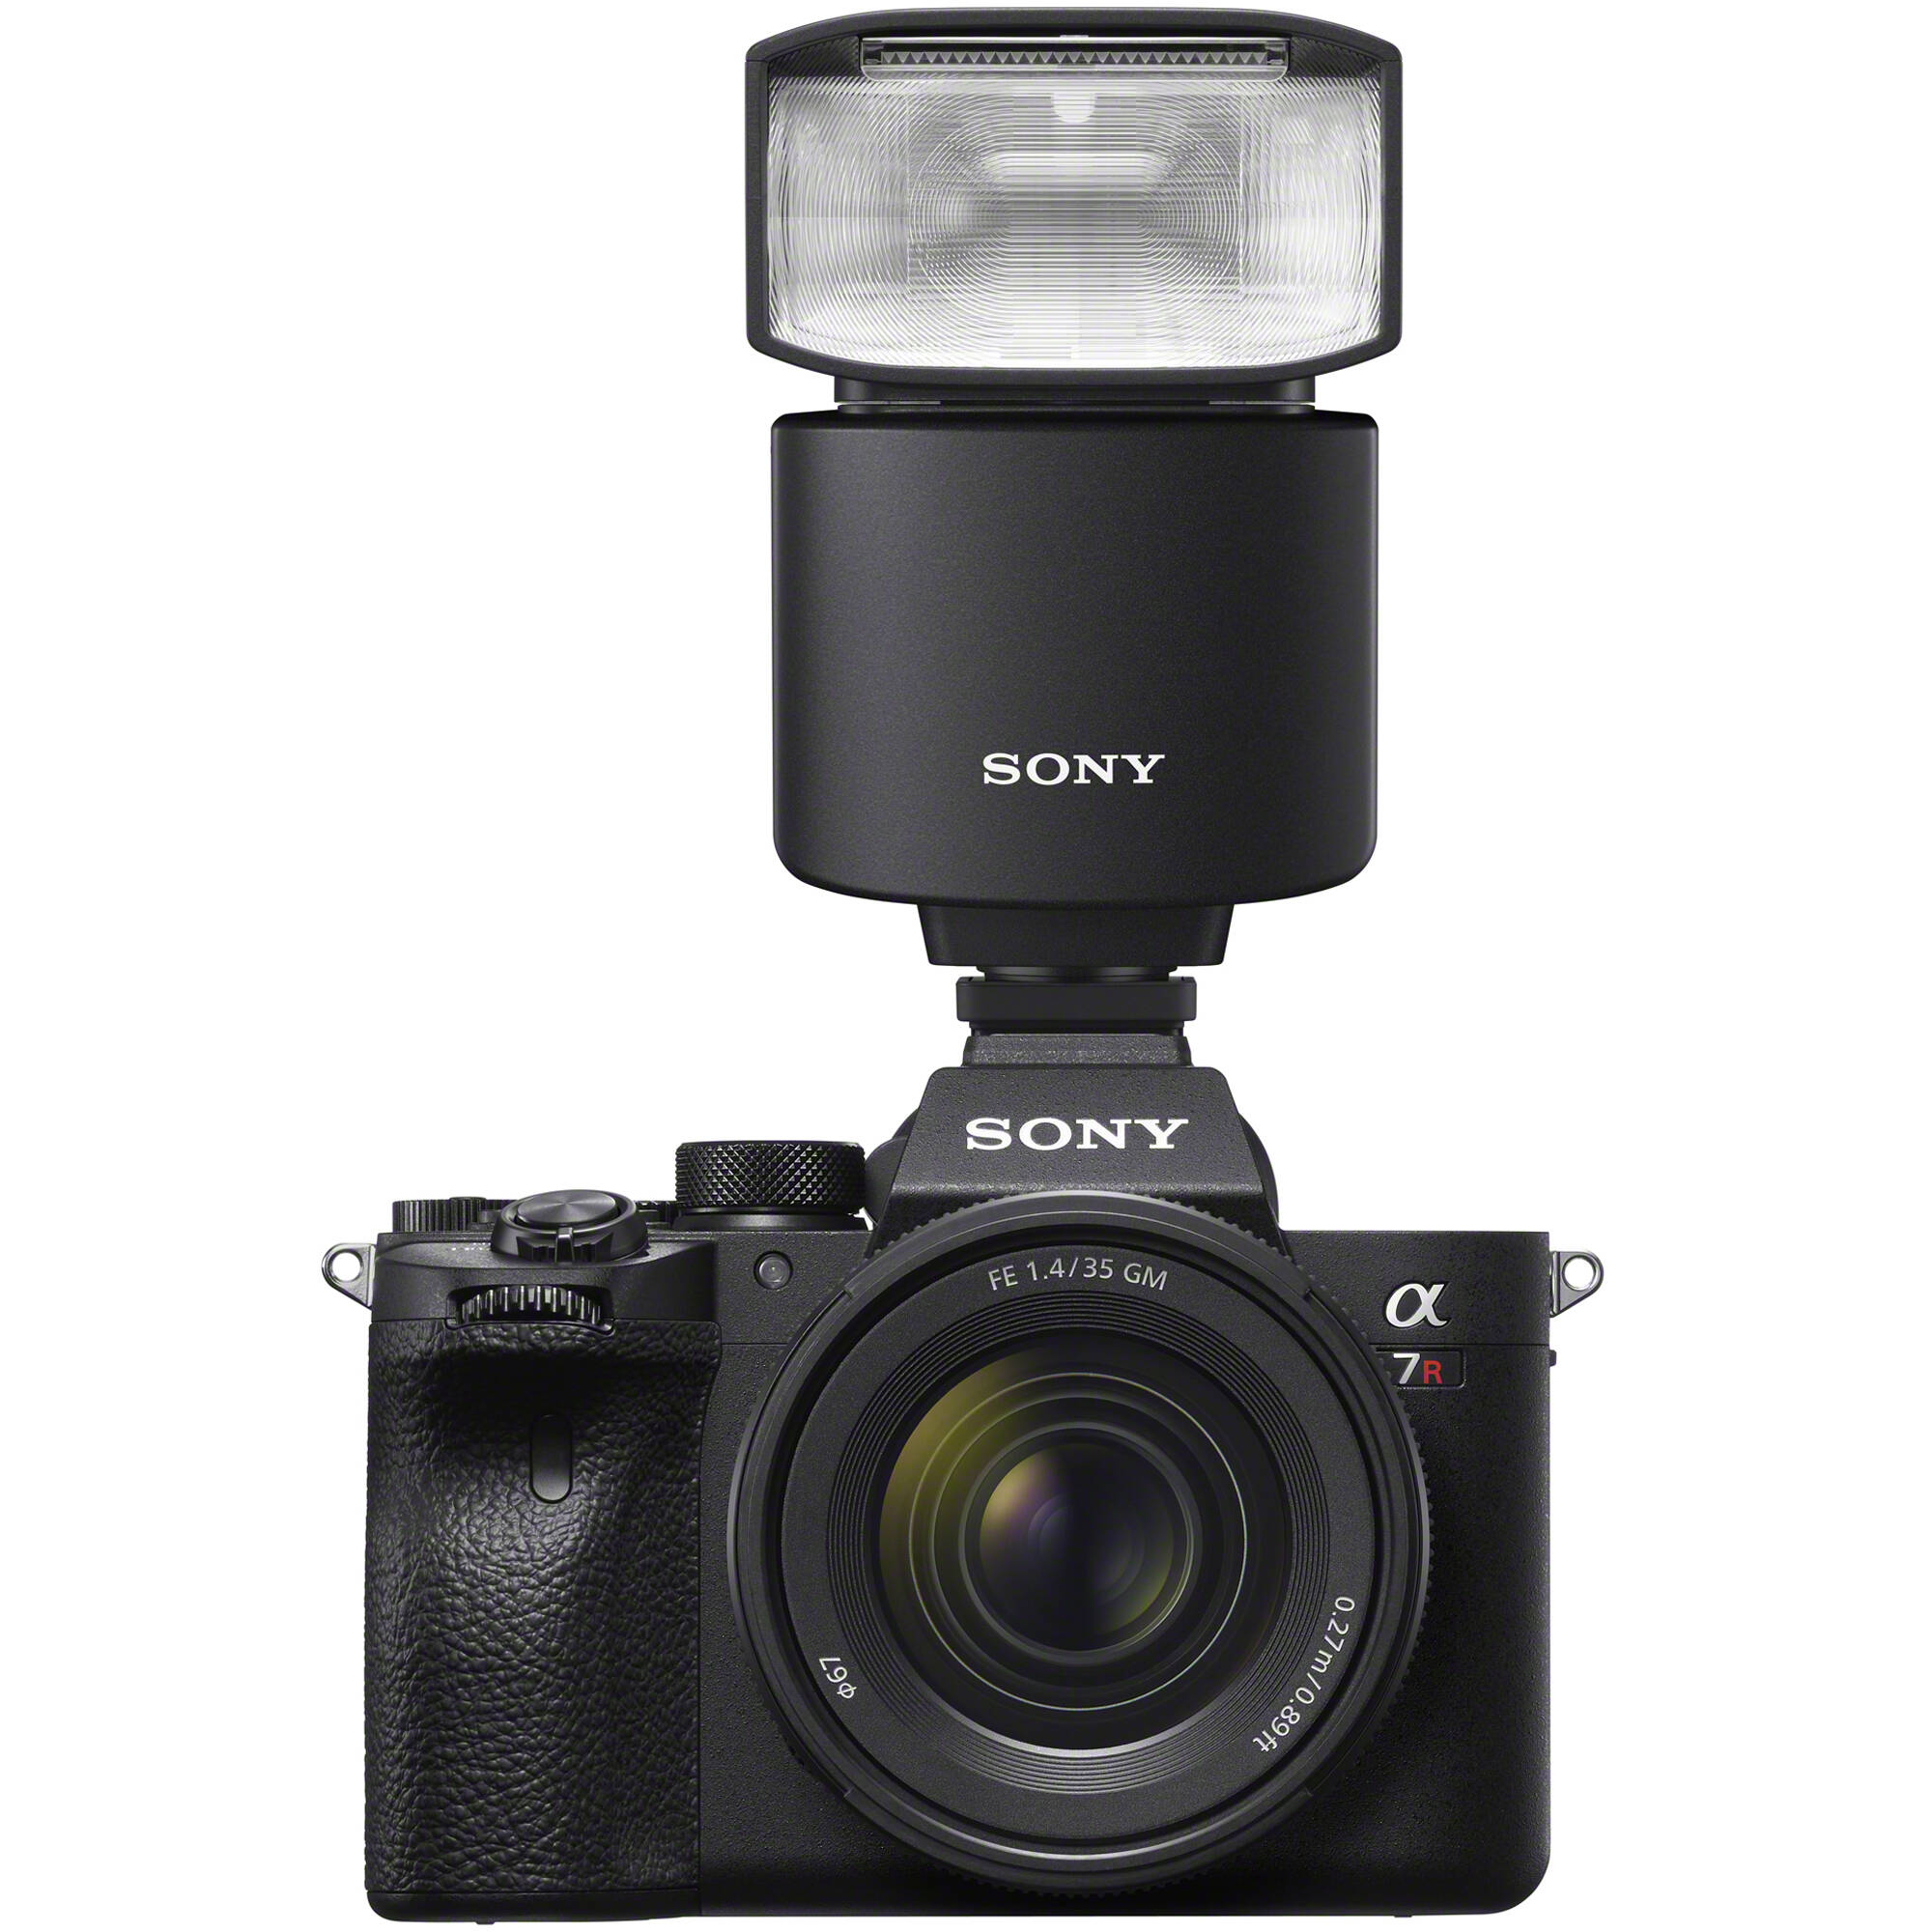 Sony HVL F46RM sở hữu khả năng chiếu sáng ấn tượng